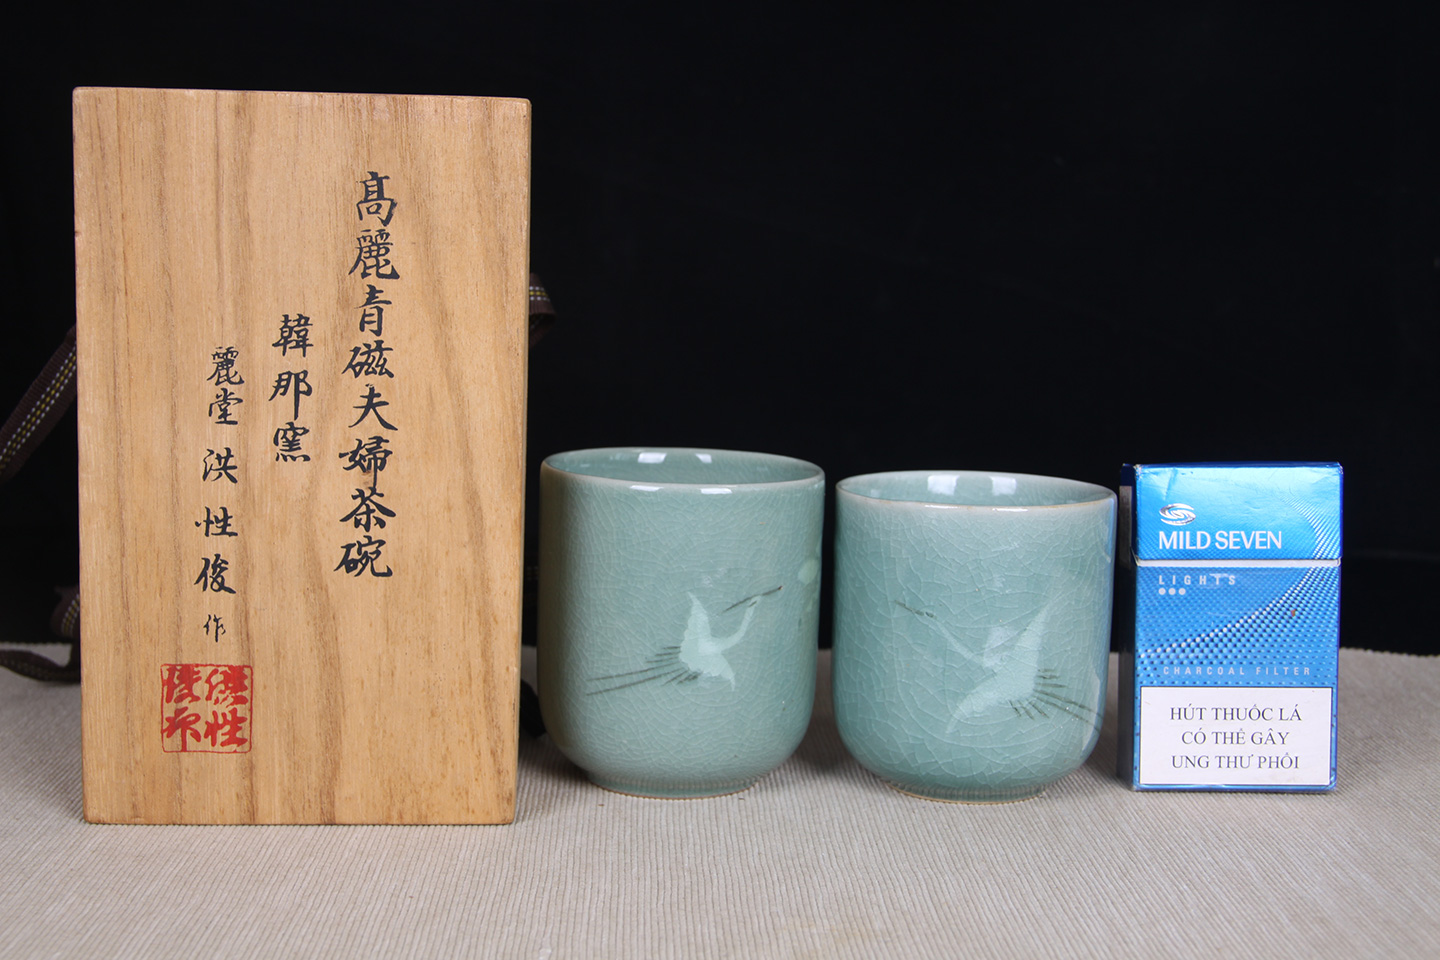 日本陶瓷丽堂款韩那窑高丽青瓷夫妇夫妻杯青瓷小茶碗品杯带原装桐木供箱 